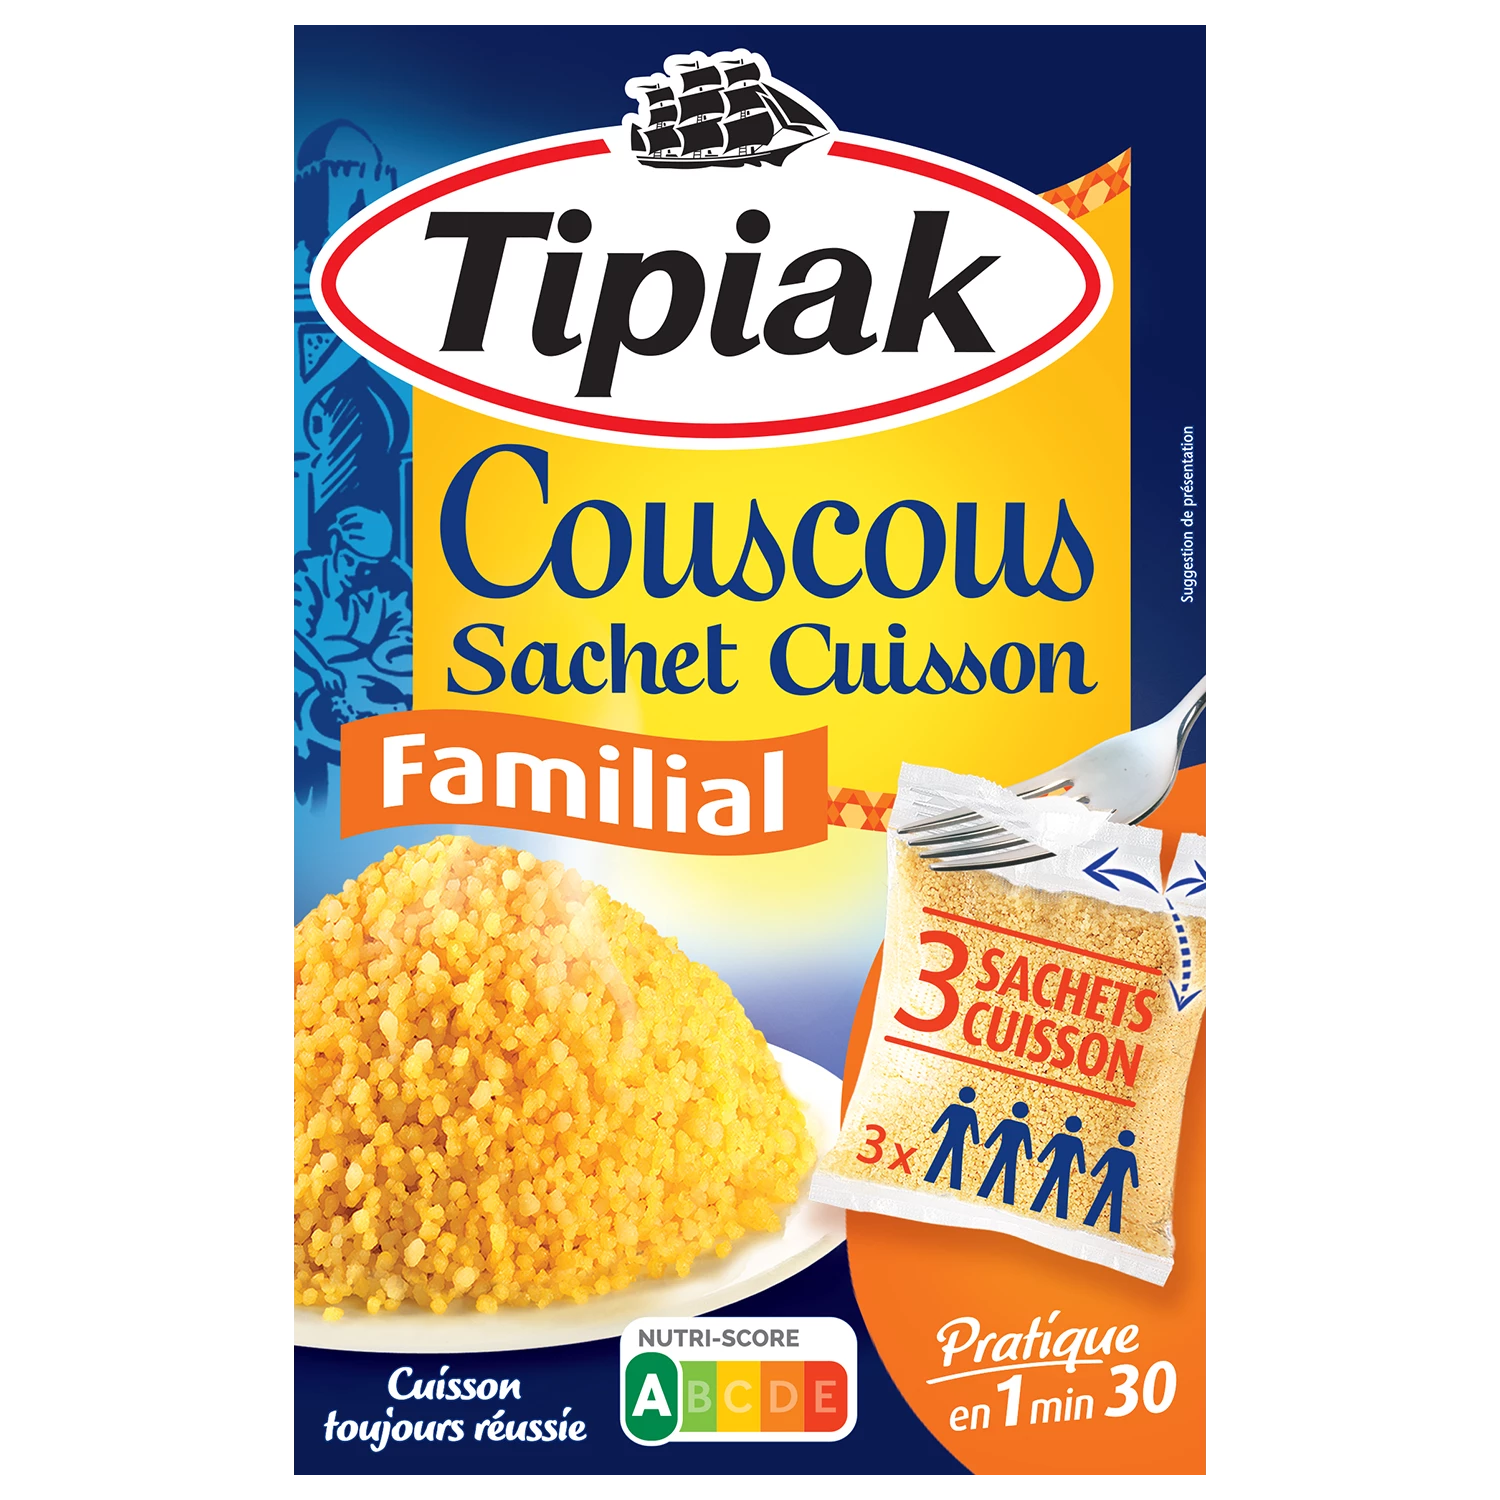 Couscous Sc Familial Tipiak 3x